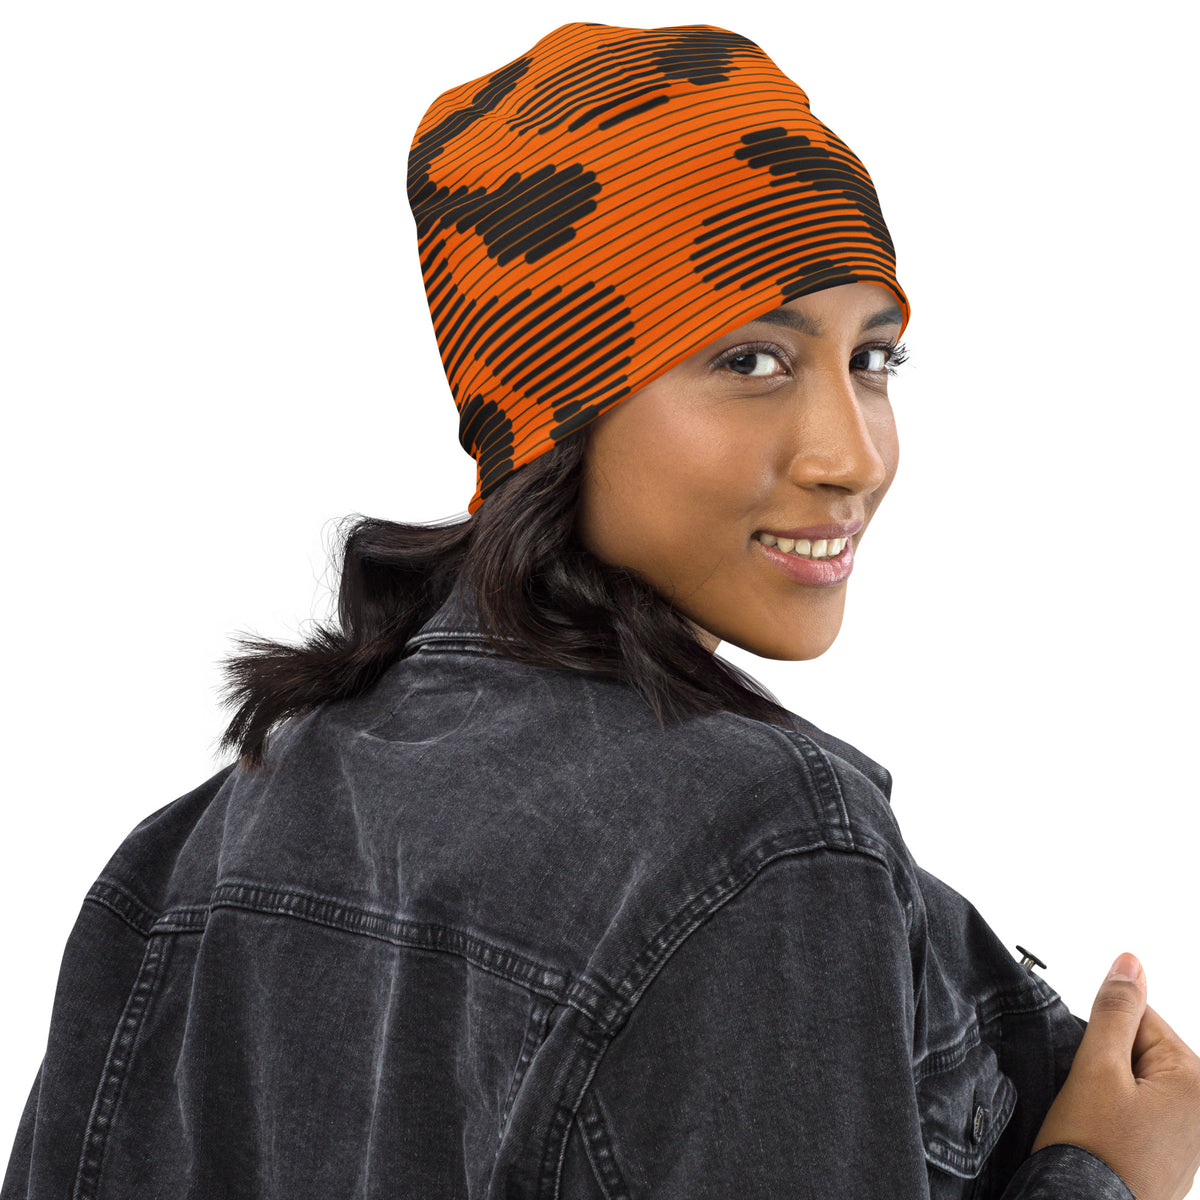 Digital Camouflage Blaze Orange Beanie - Liberty Maniacs